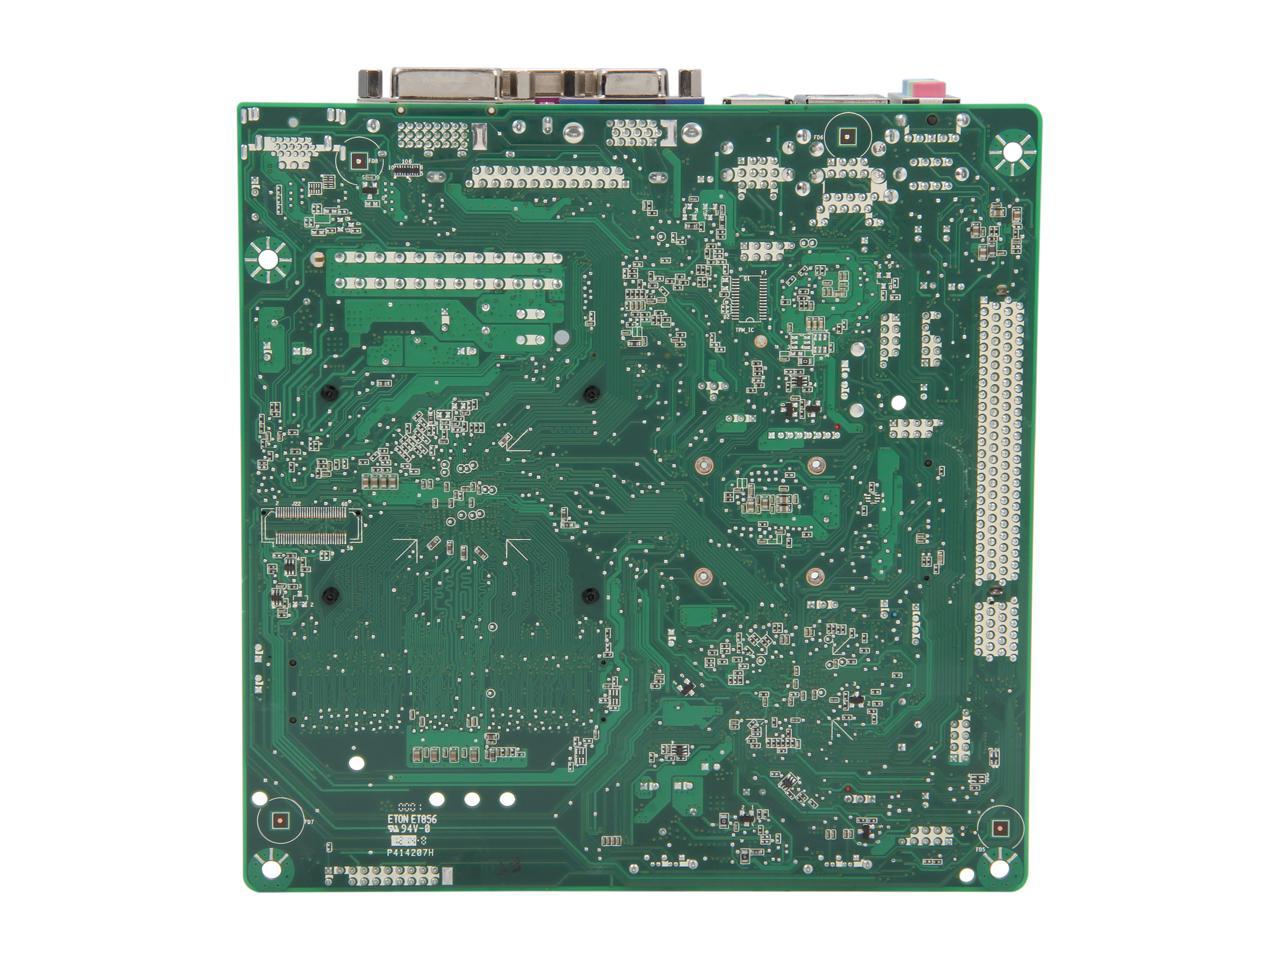 Intel BOXD2550MUD2 Intel Atom D2550 (1.86GHz Dual Core) Mini ITX